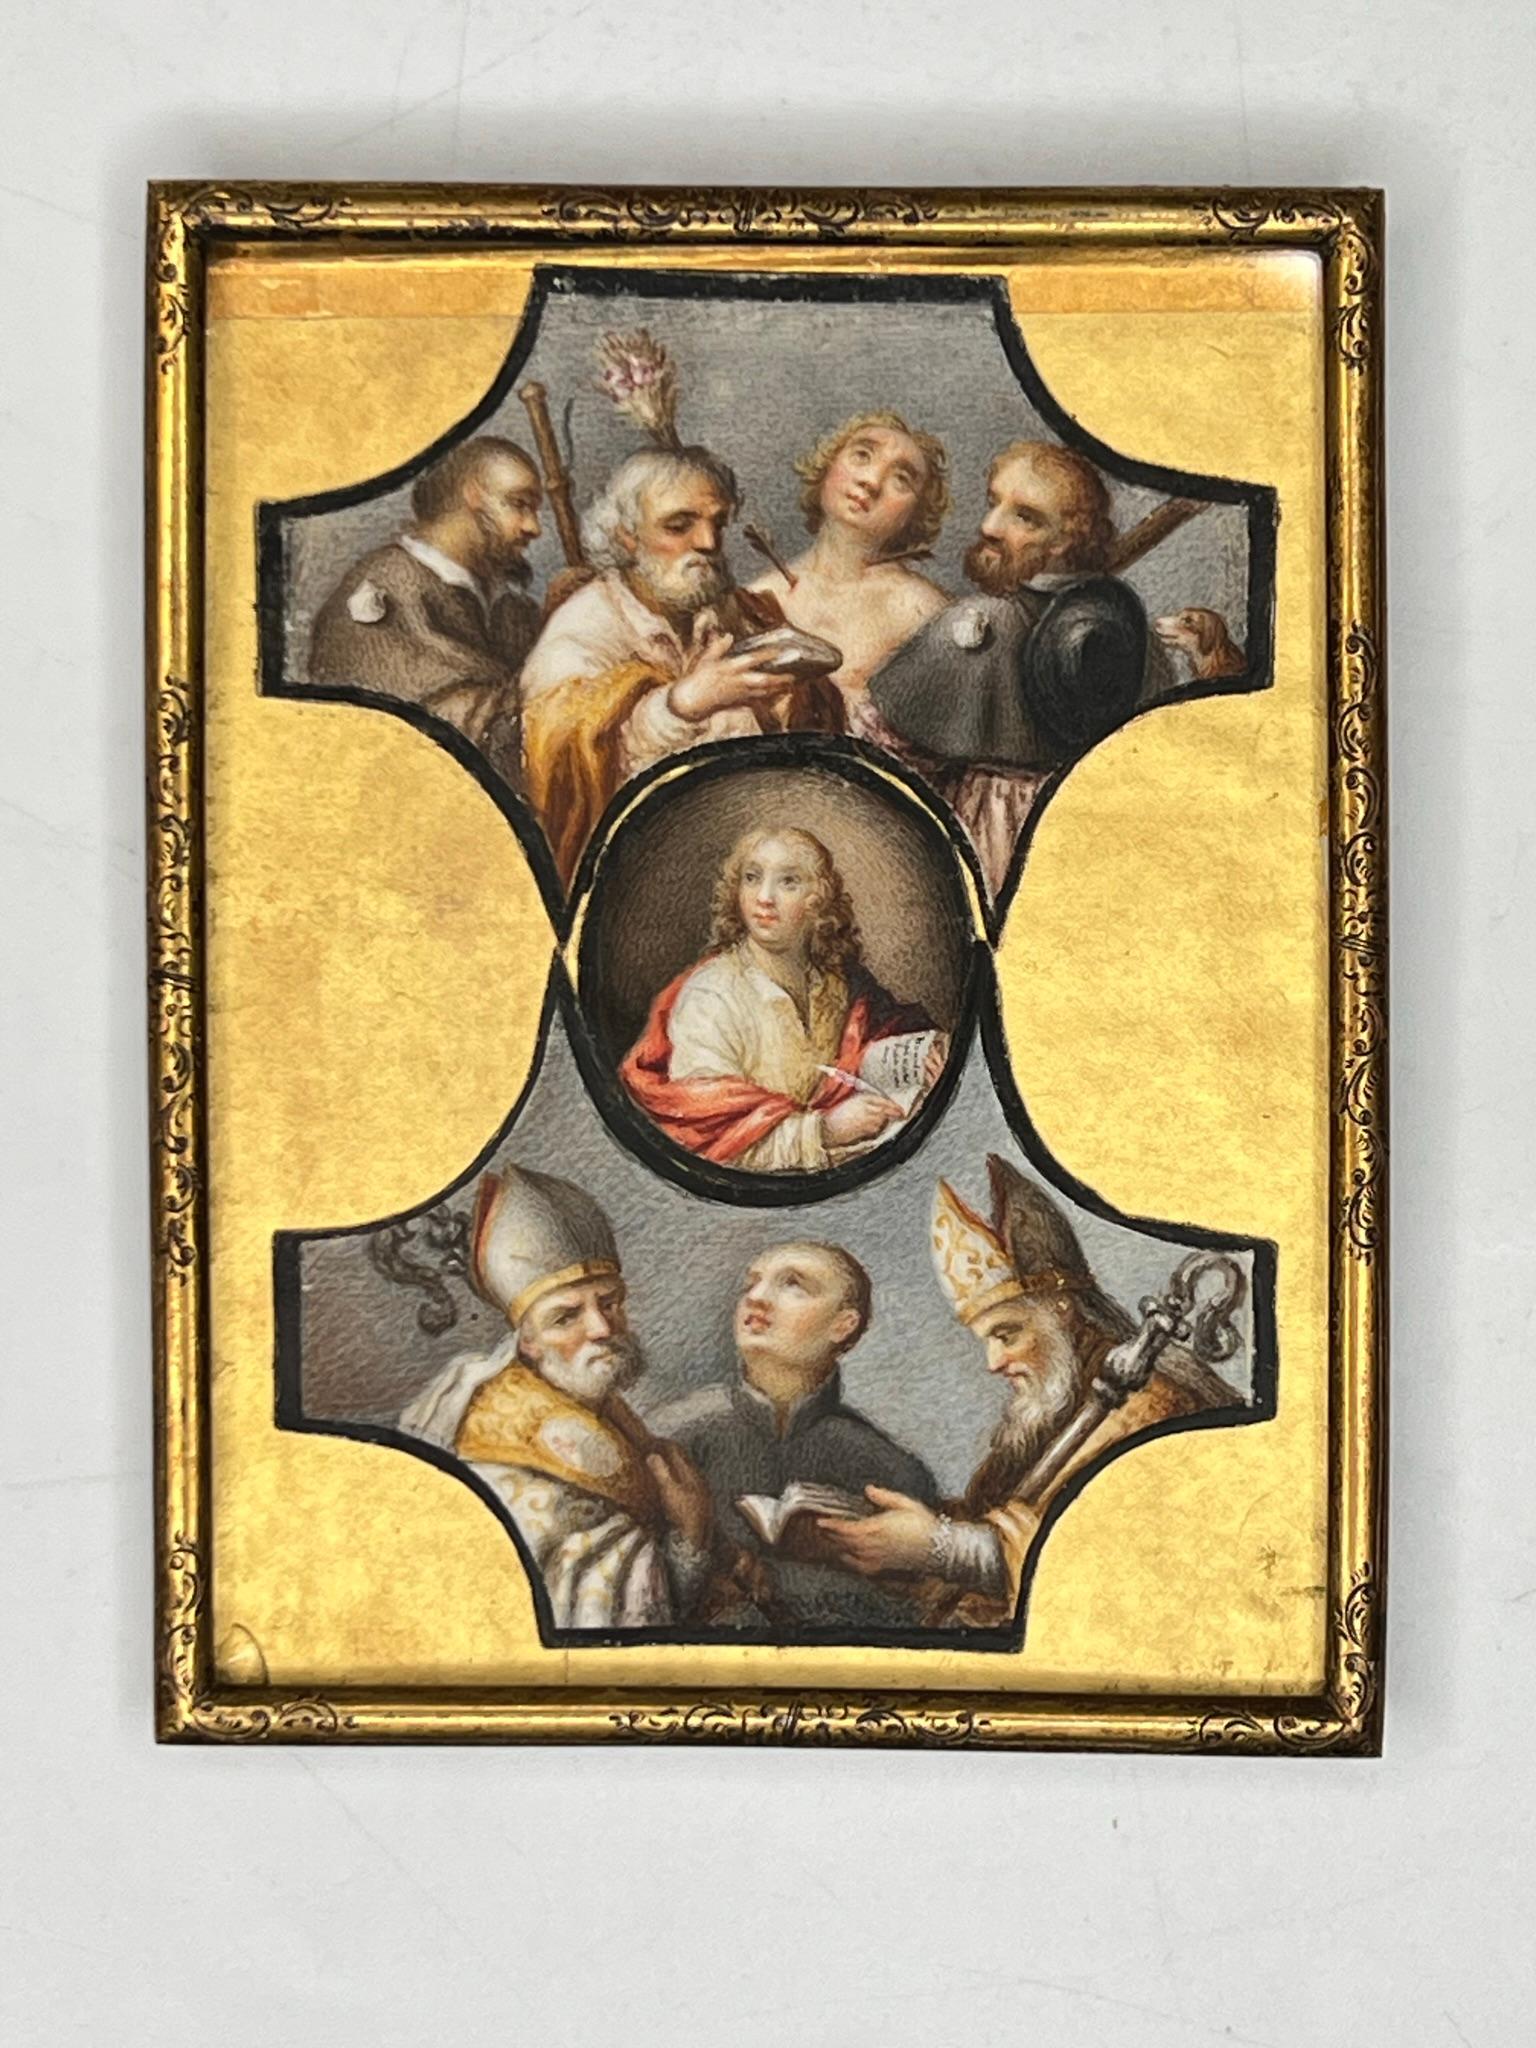 Paar außergewöhnliche Ikonen aus dem 18. Jahrhundert, handbemalt auf Knochen, die verschiedene Heilige darstellen, montiert in vergoldeten Metallrahmen.  Offensichtlich unsigniert.  Alle in gutem Zustand.  Gemälde auf späterem Karton montiert.  